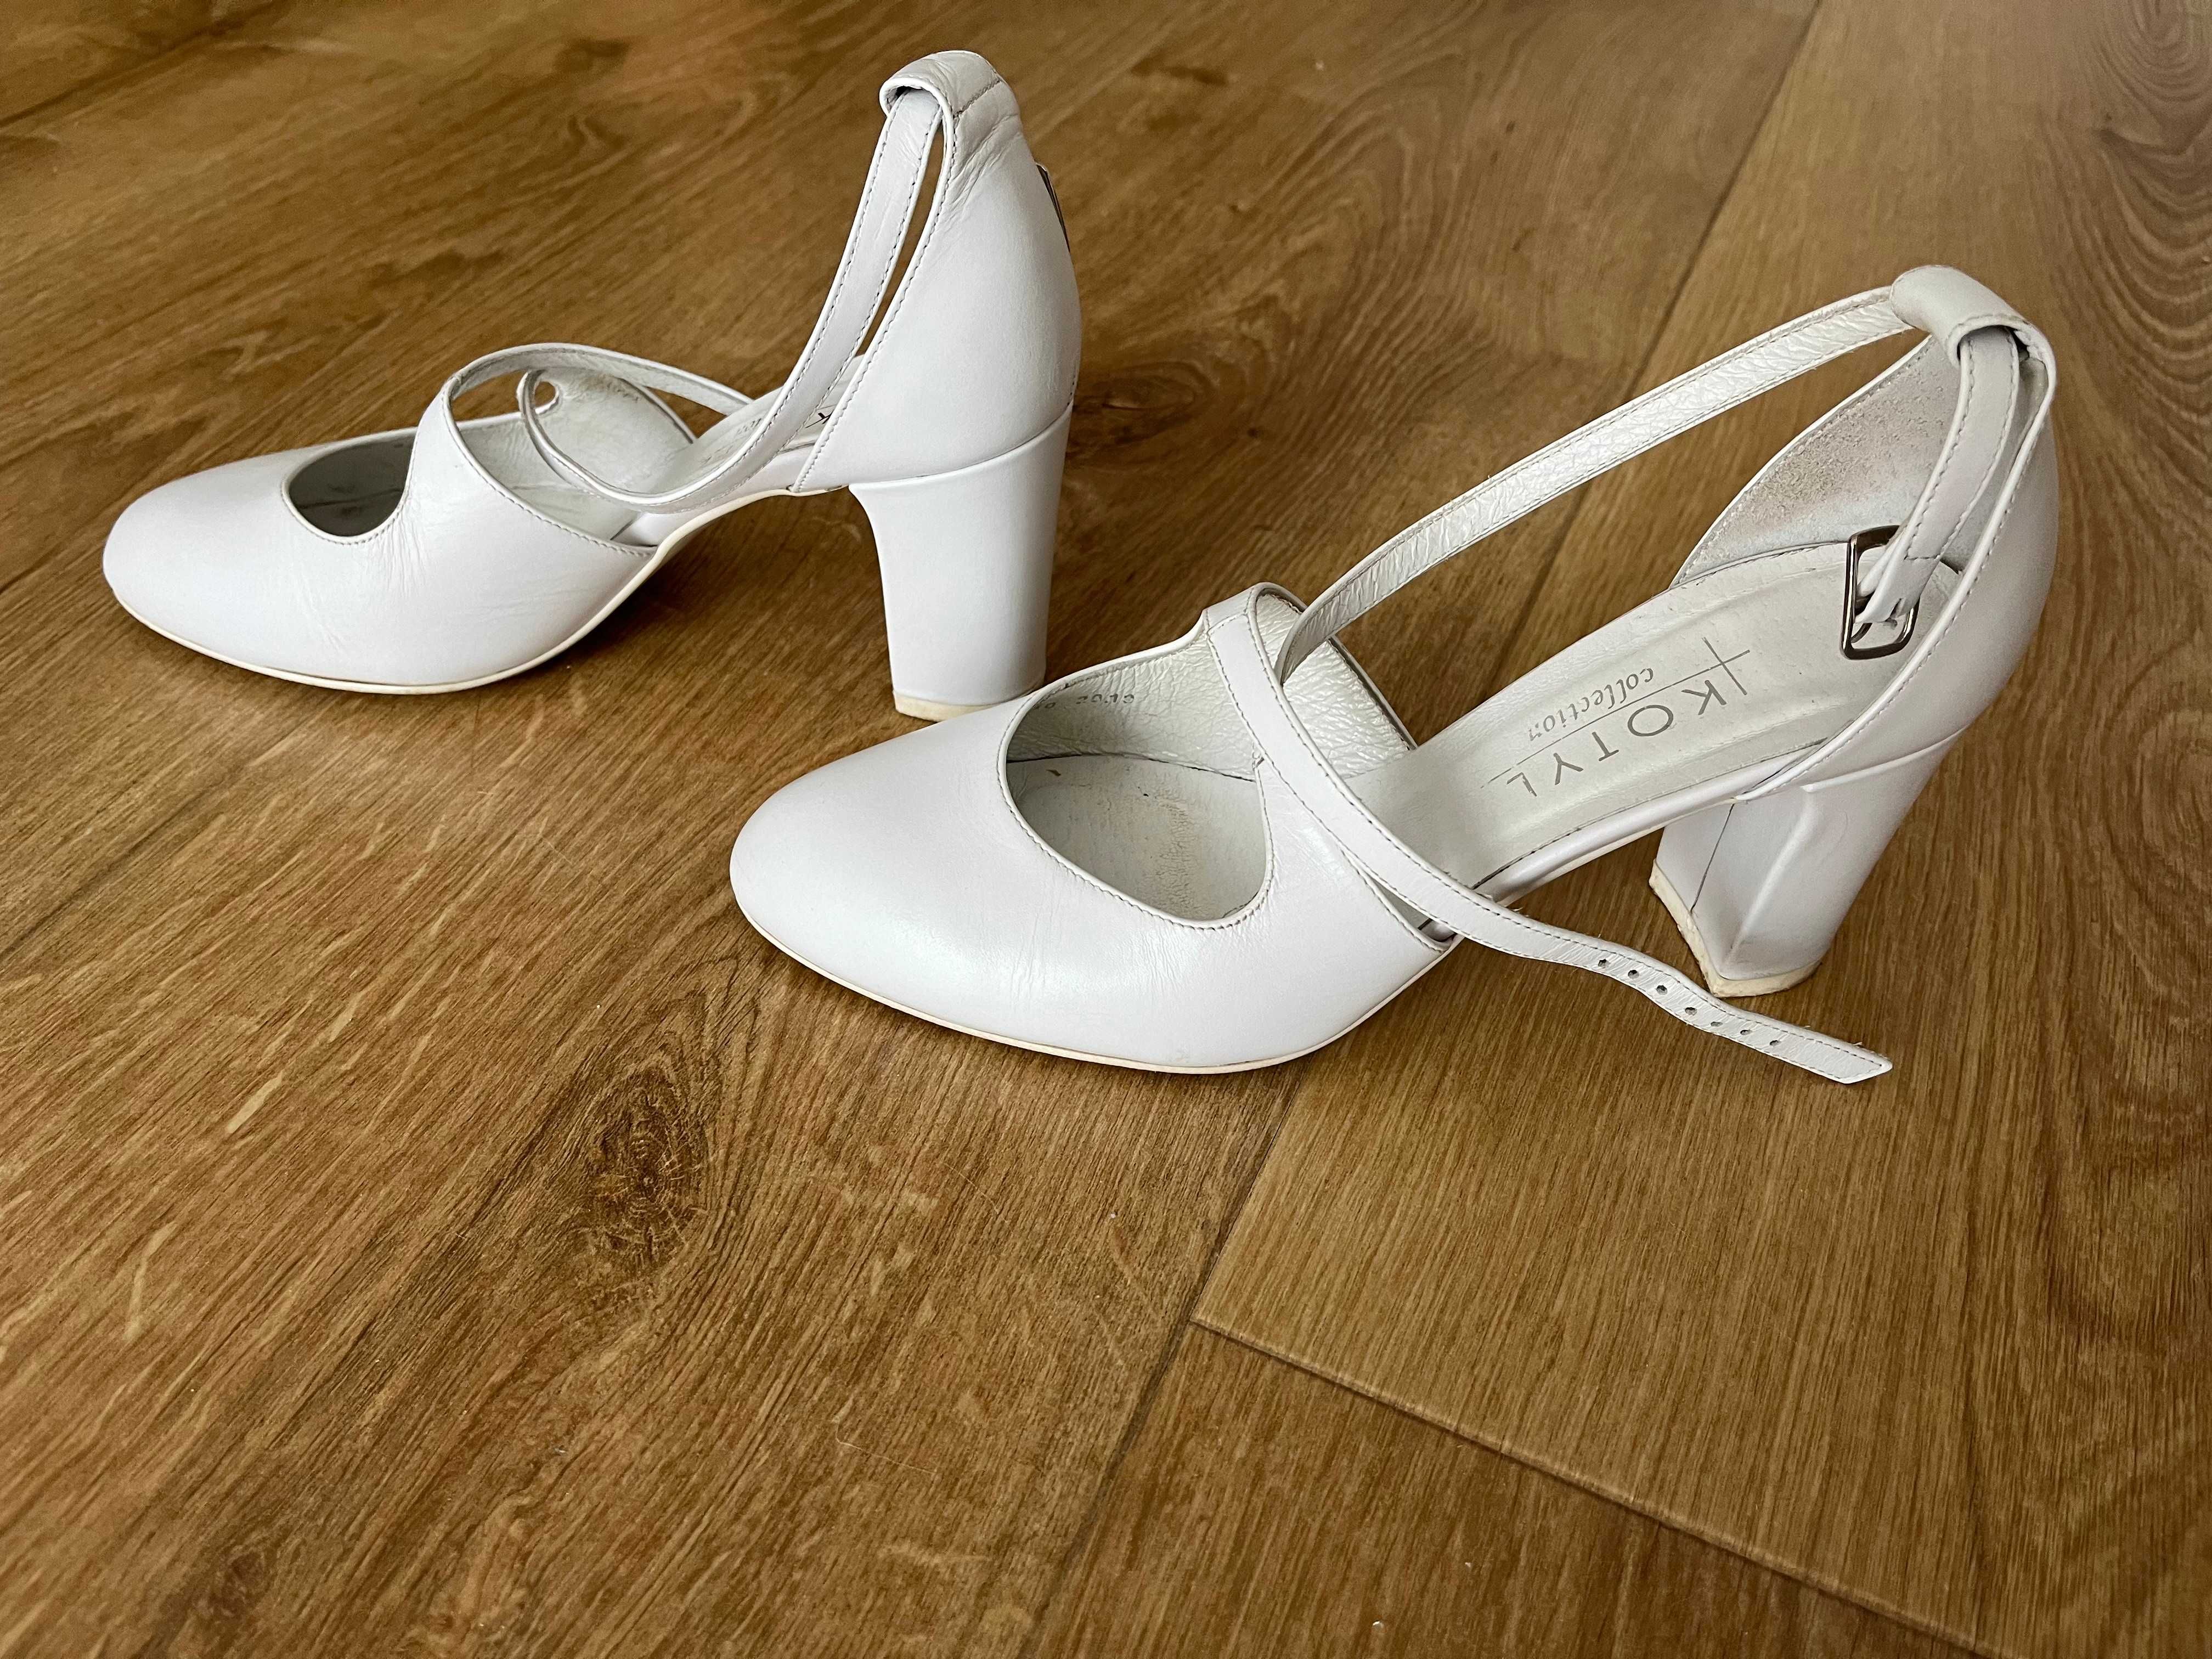 Buty ślubne białe Kotyl, r. 37, skóra, SUPER WYGODNE, obcas 7cm